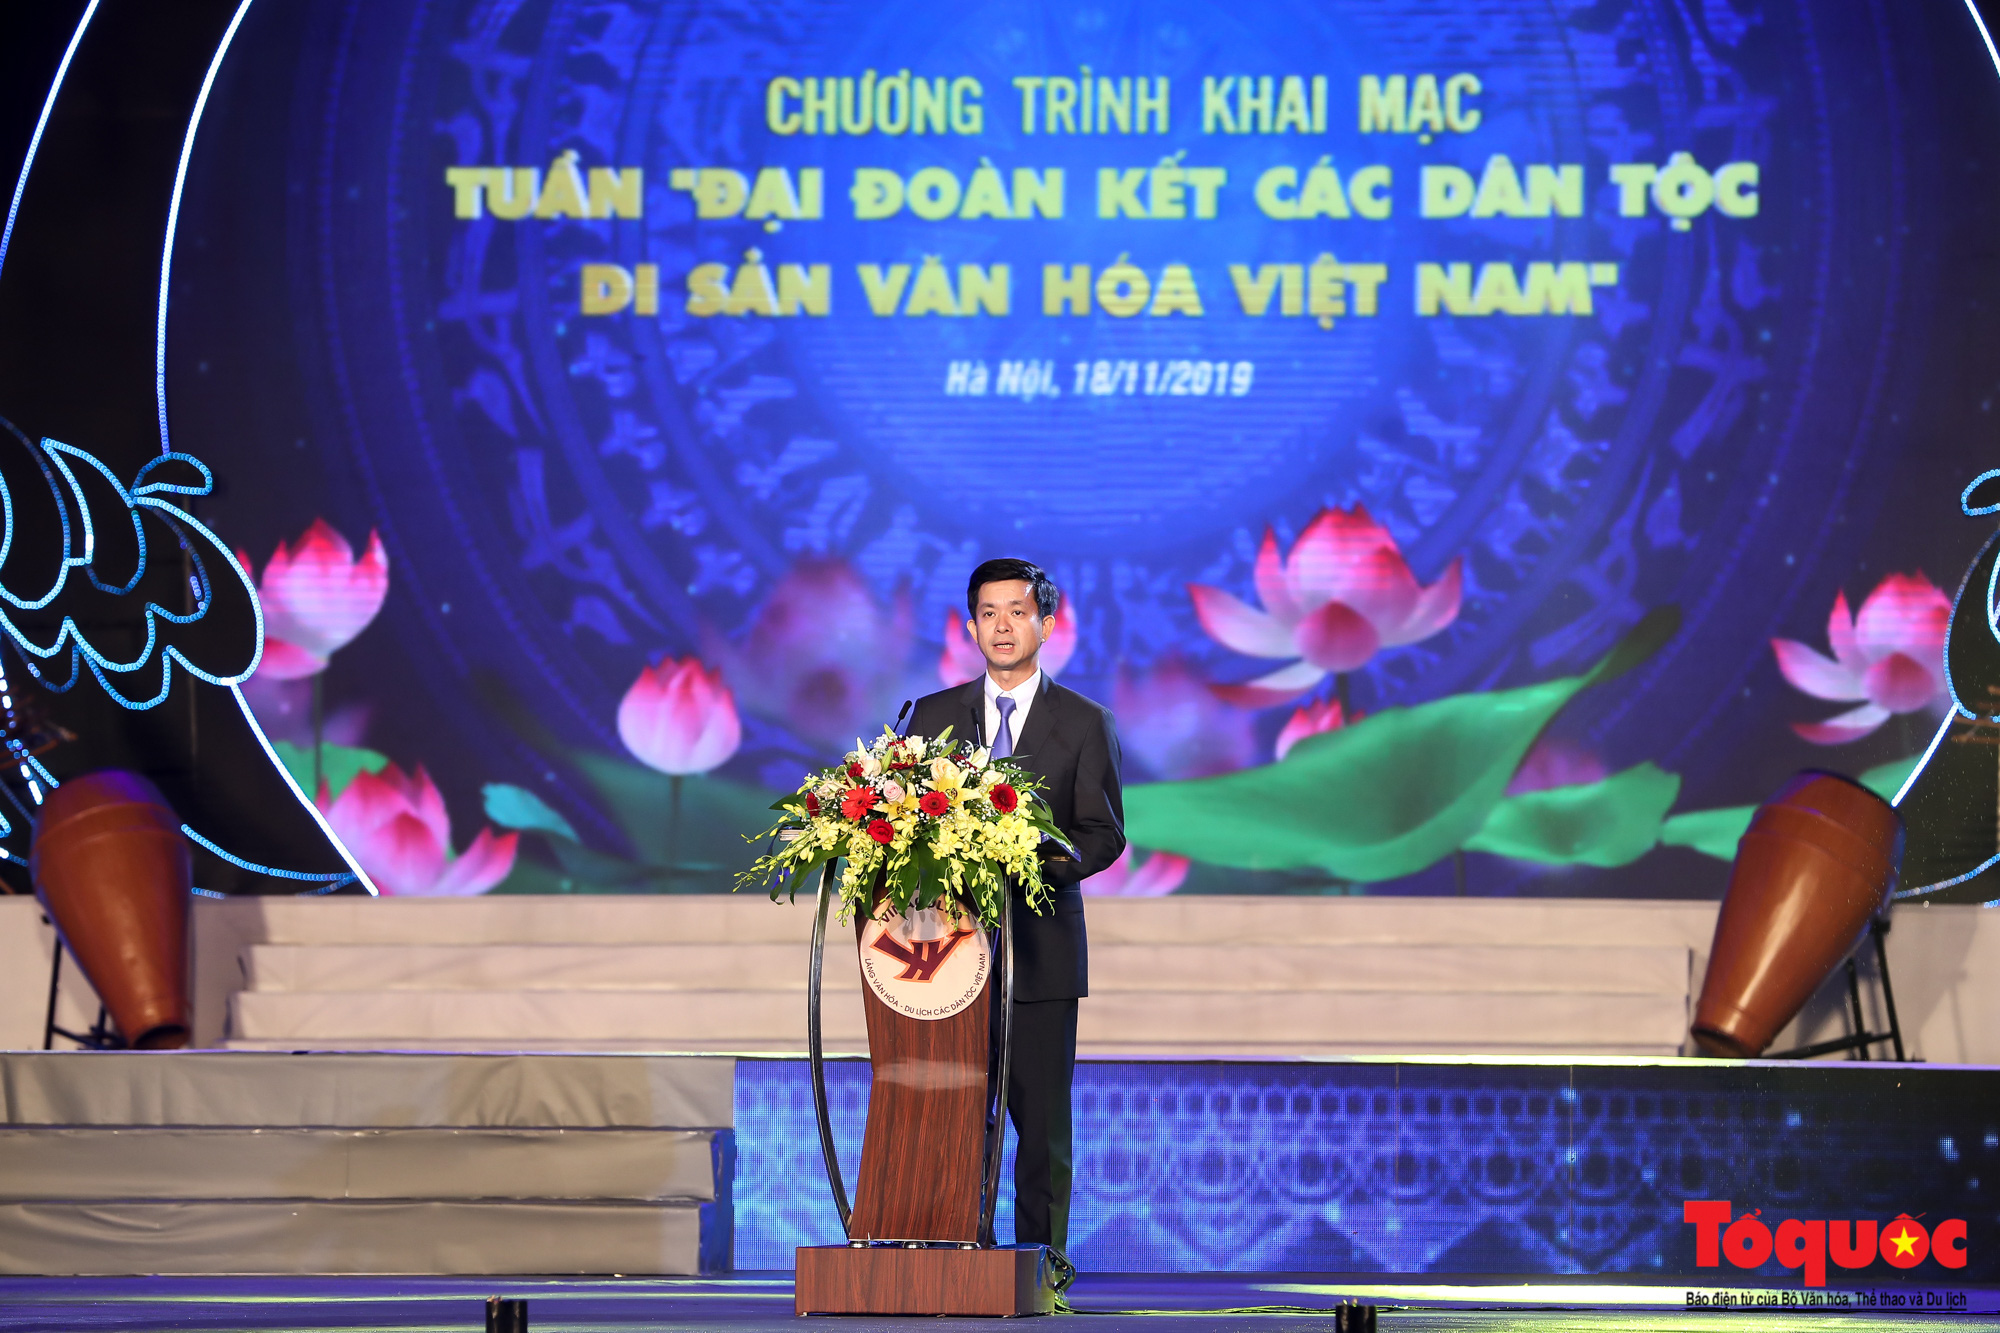 Hình ảnh ấn tượng trong lễ khai mạc Tuần “Đại đoàn kết các dân tộc - Di sản Văn hoá Việt Nam” năm 2019 - Ảnh 4.